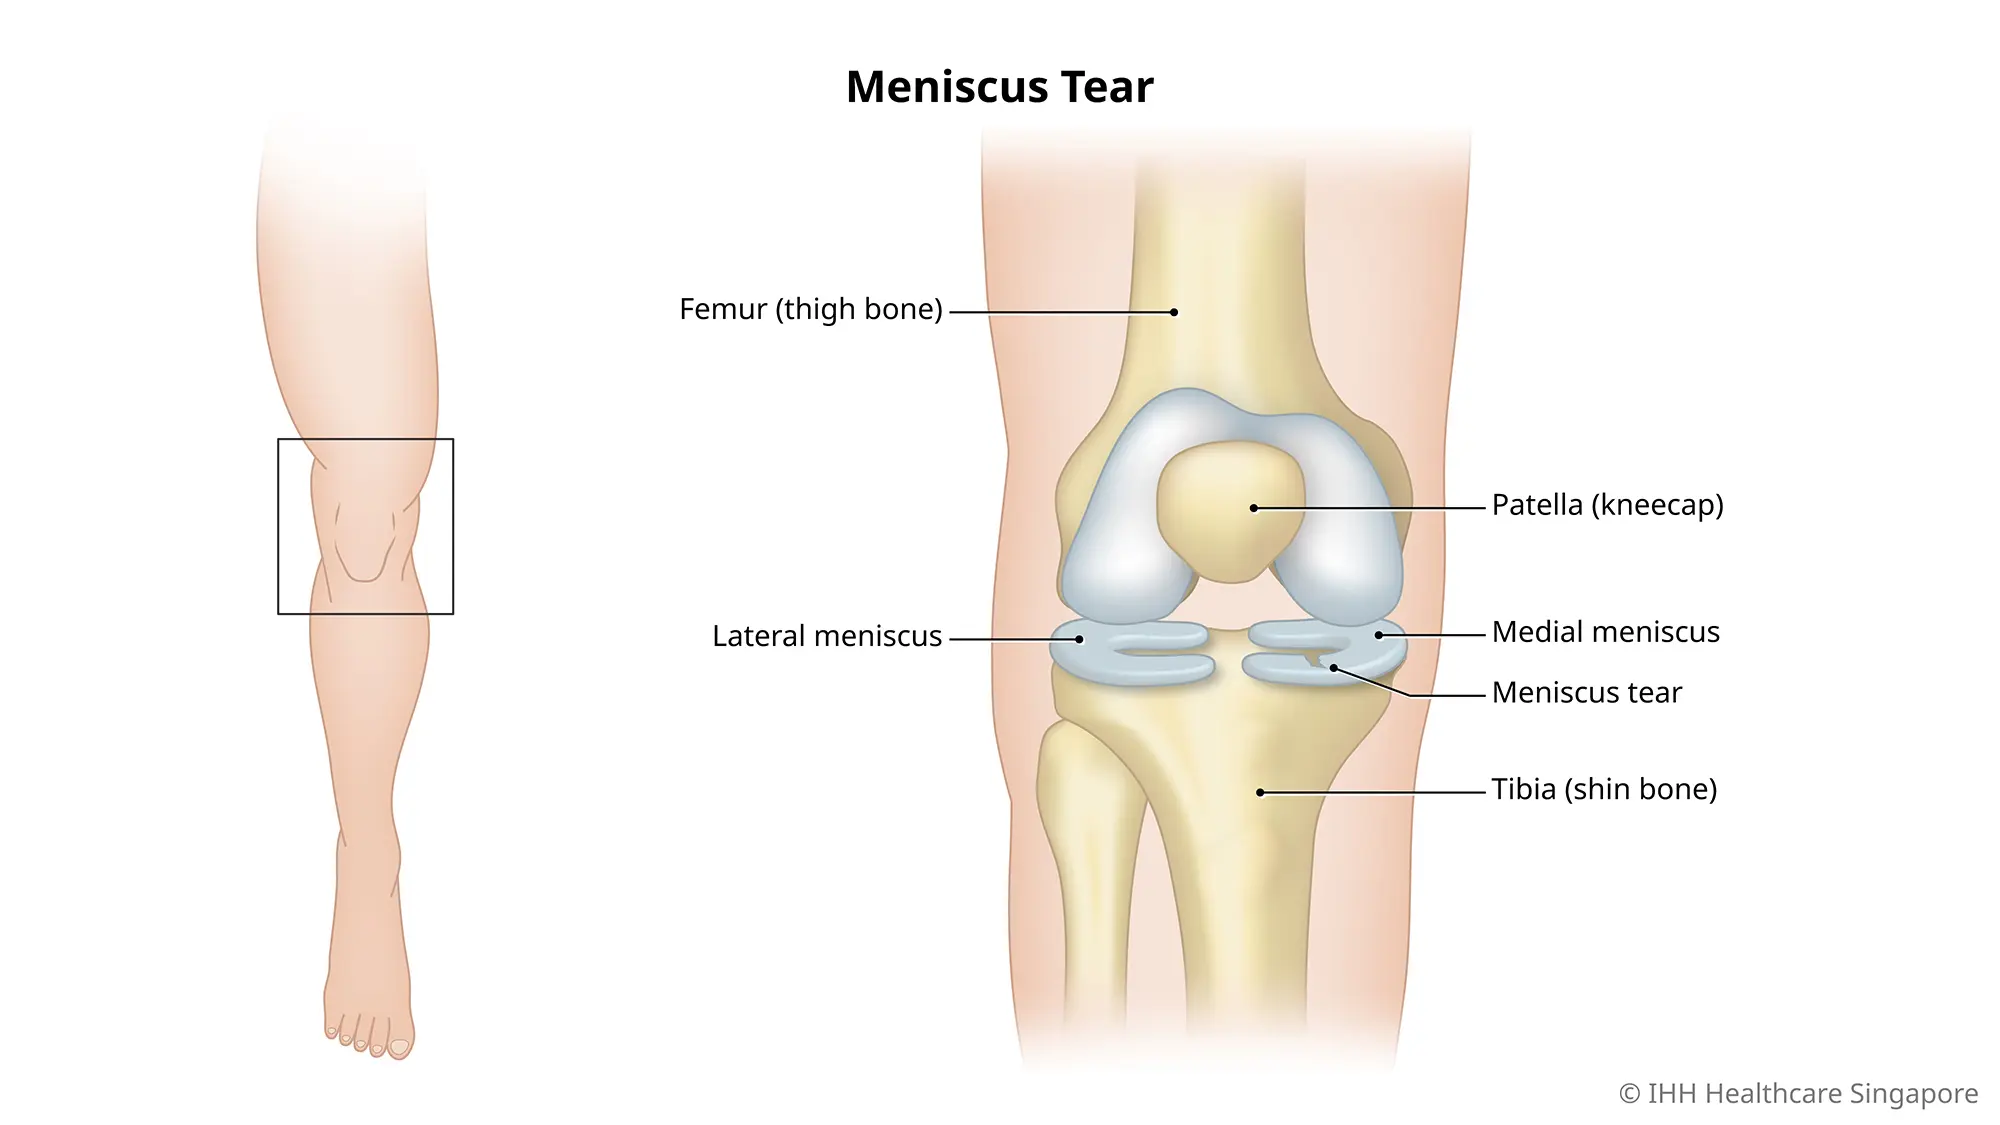 半月板撕裂是指膝盖中的一块软骨受伤和撕裂。